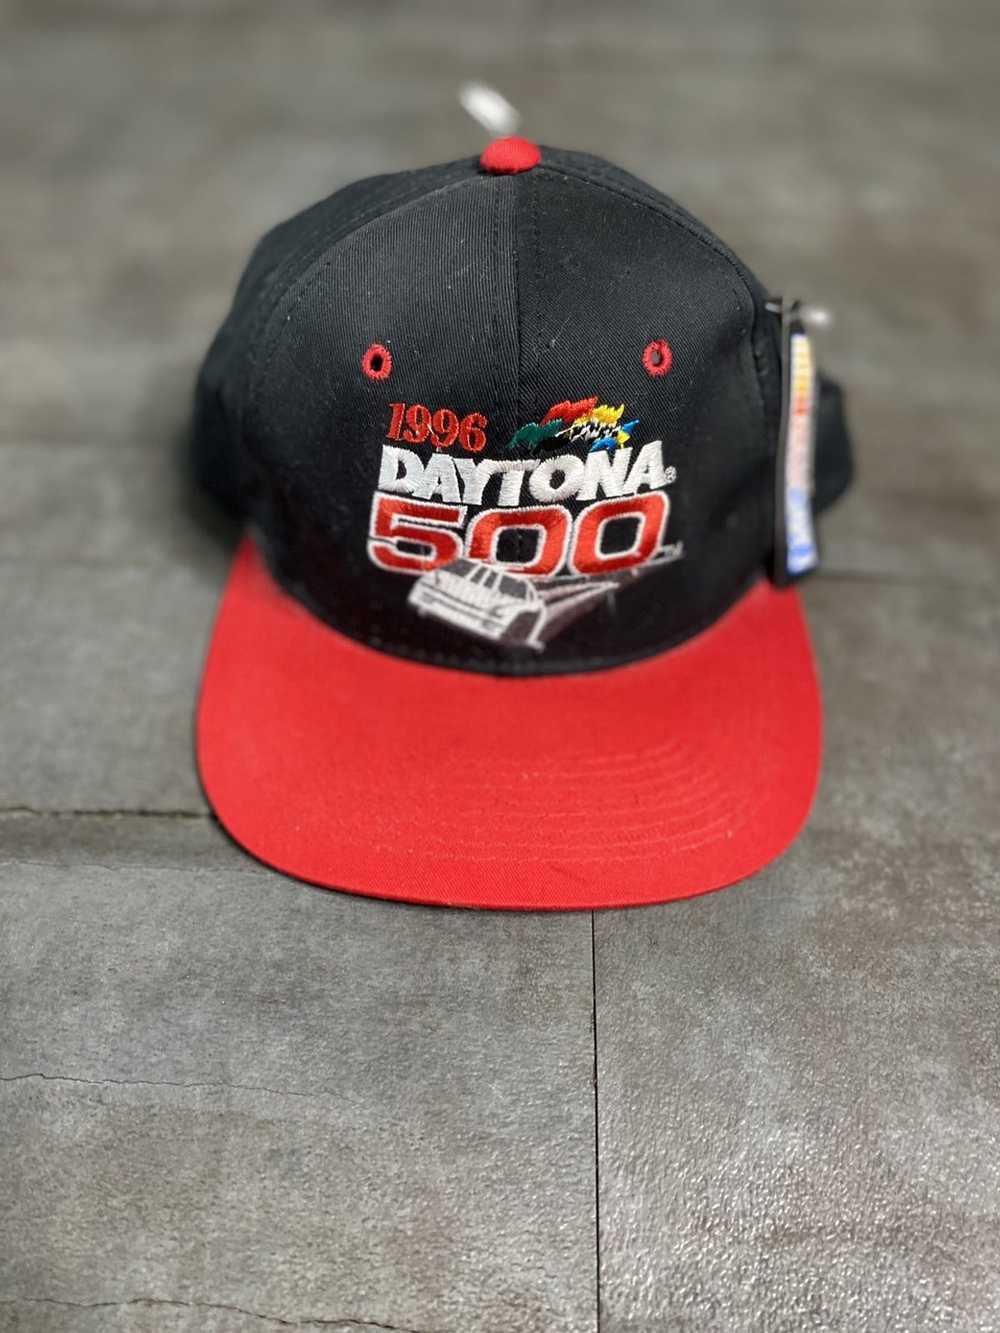 NASCAR × Vintage Vintage 1996 Daytona 500 hat. - image 1